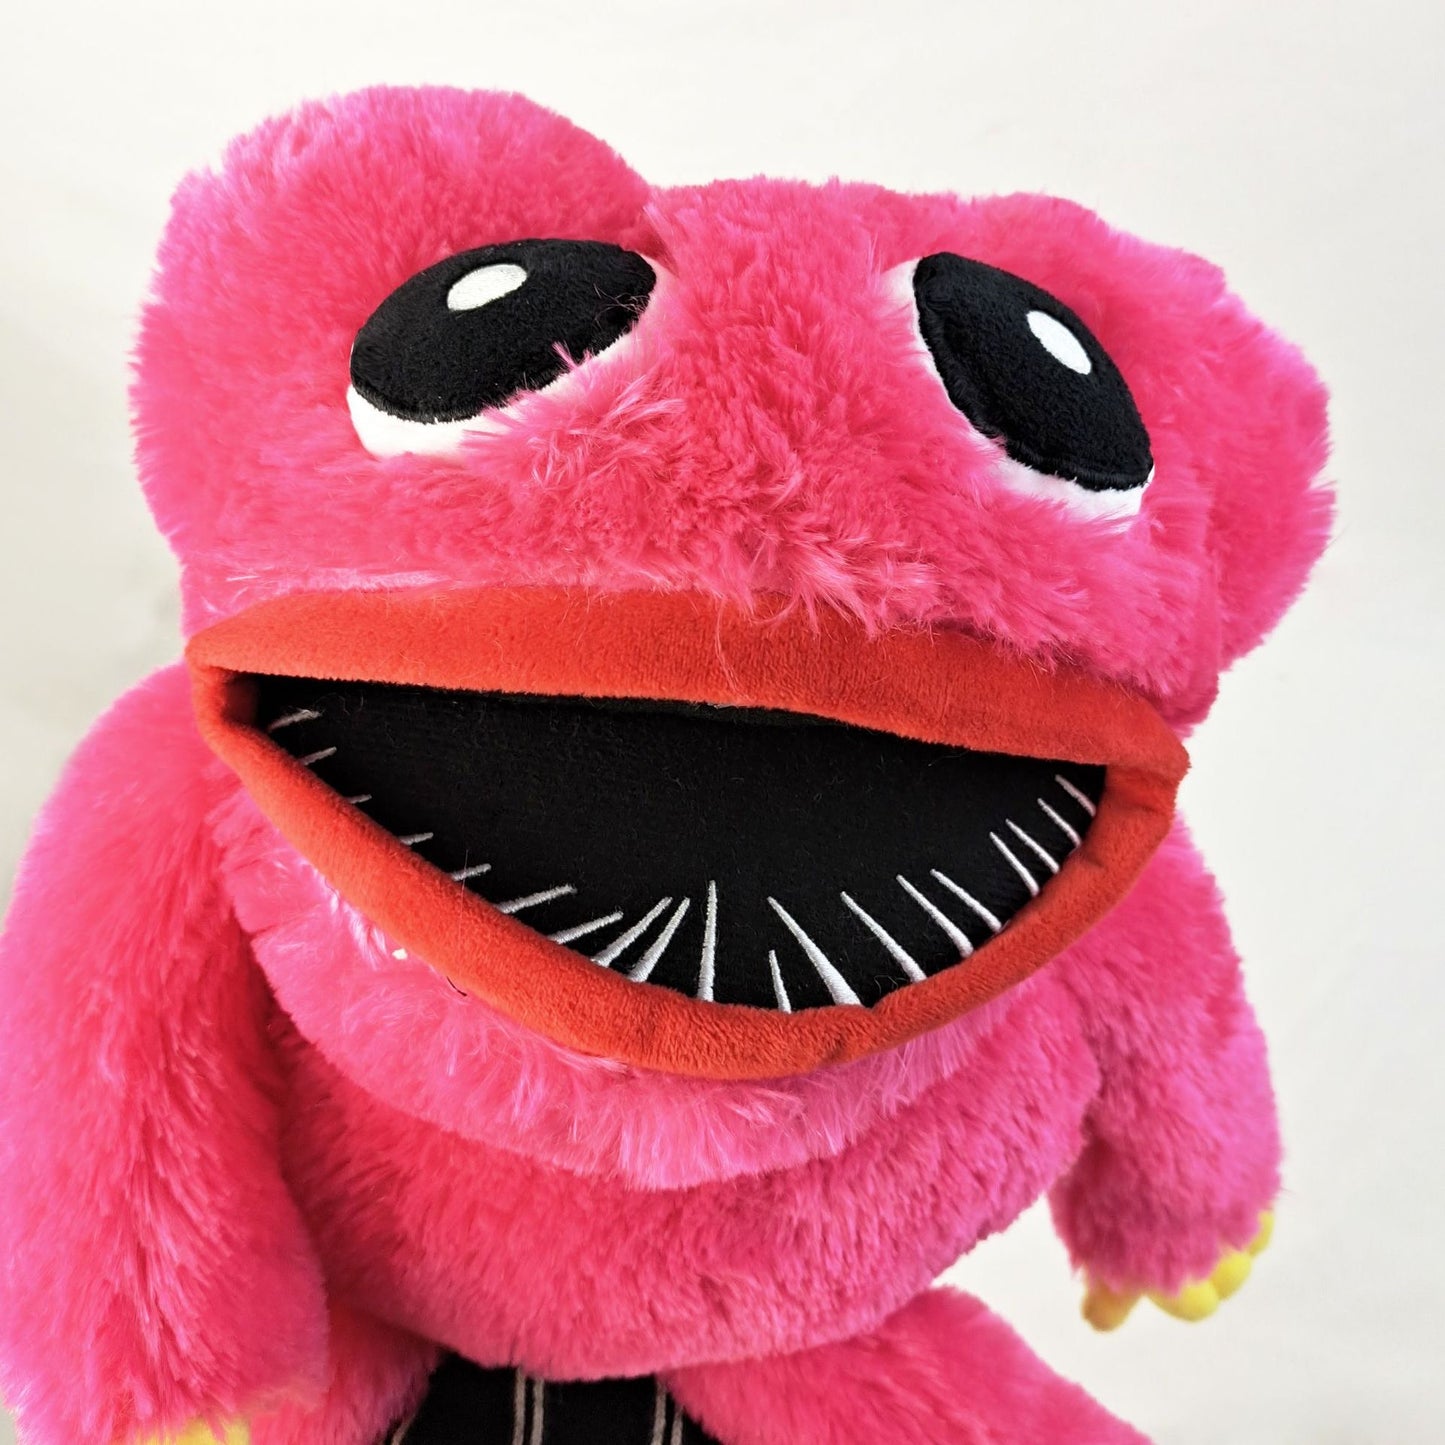 Ugly Poppy's Playtime Monster Plush Birthday Gift